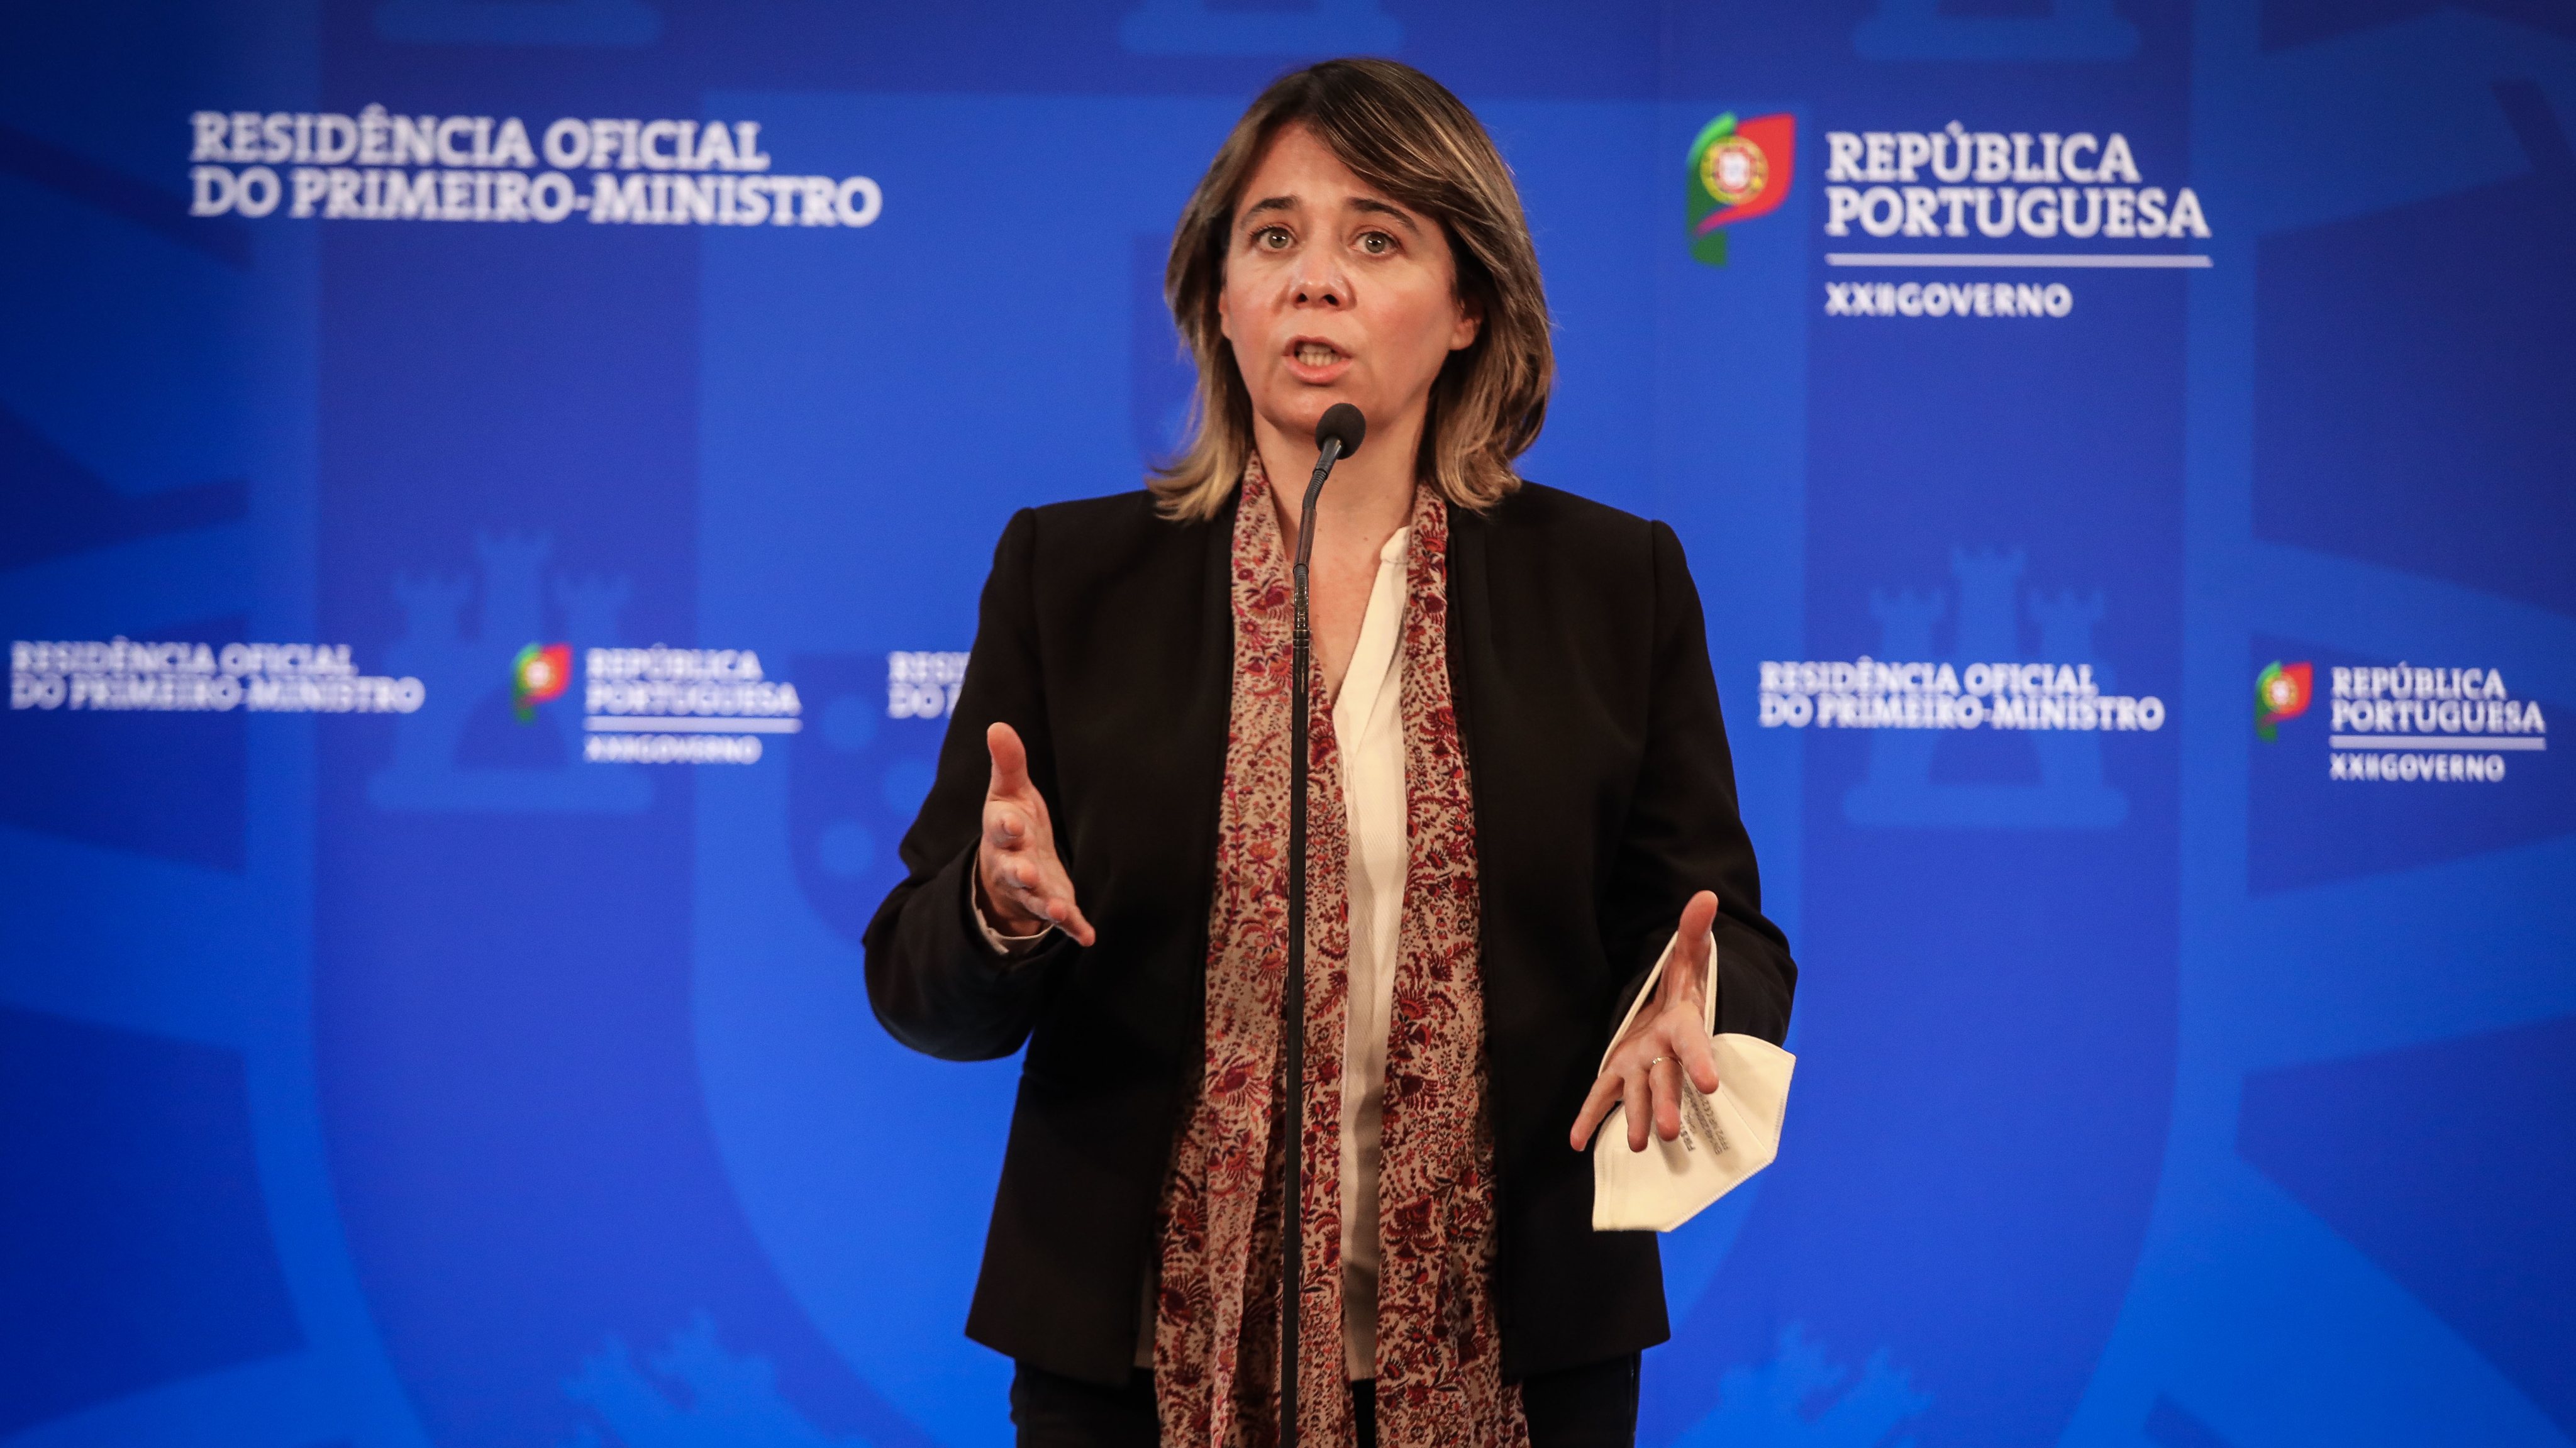 O Bloco defende que o governo português deve, no quadro da União Europeia, insistir na via diplomática